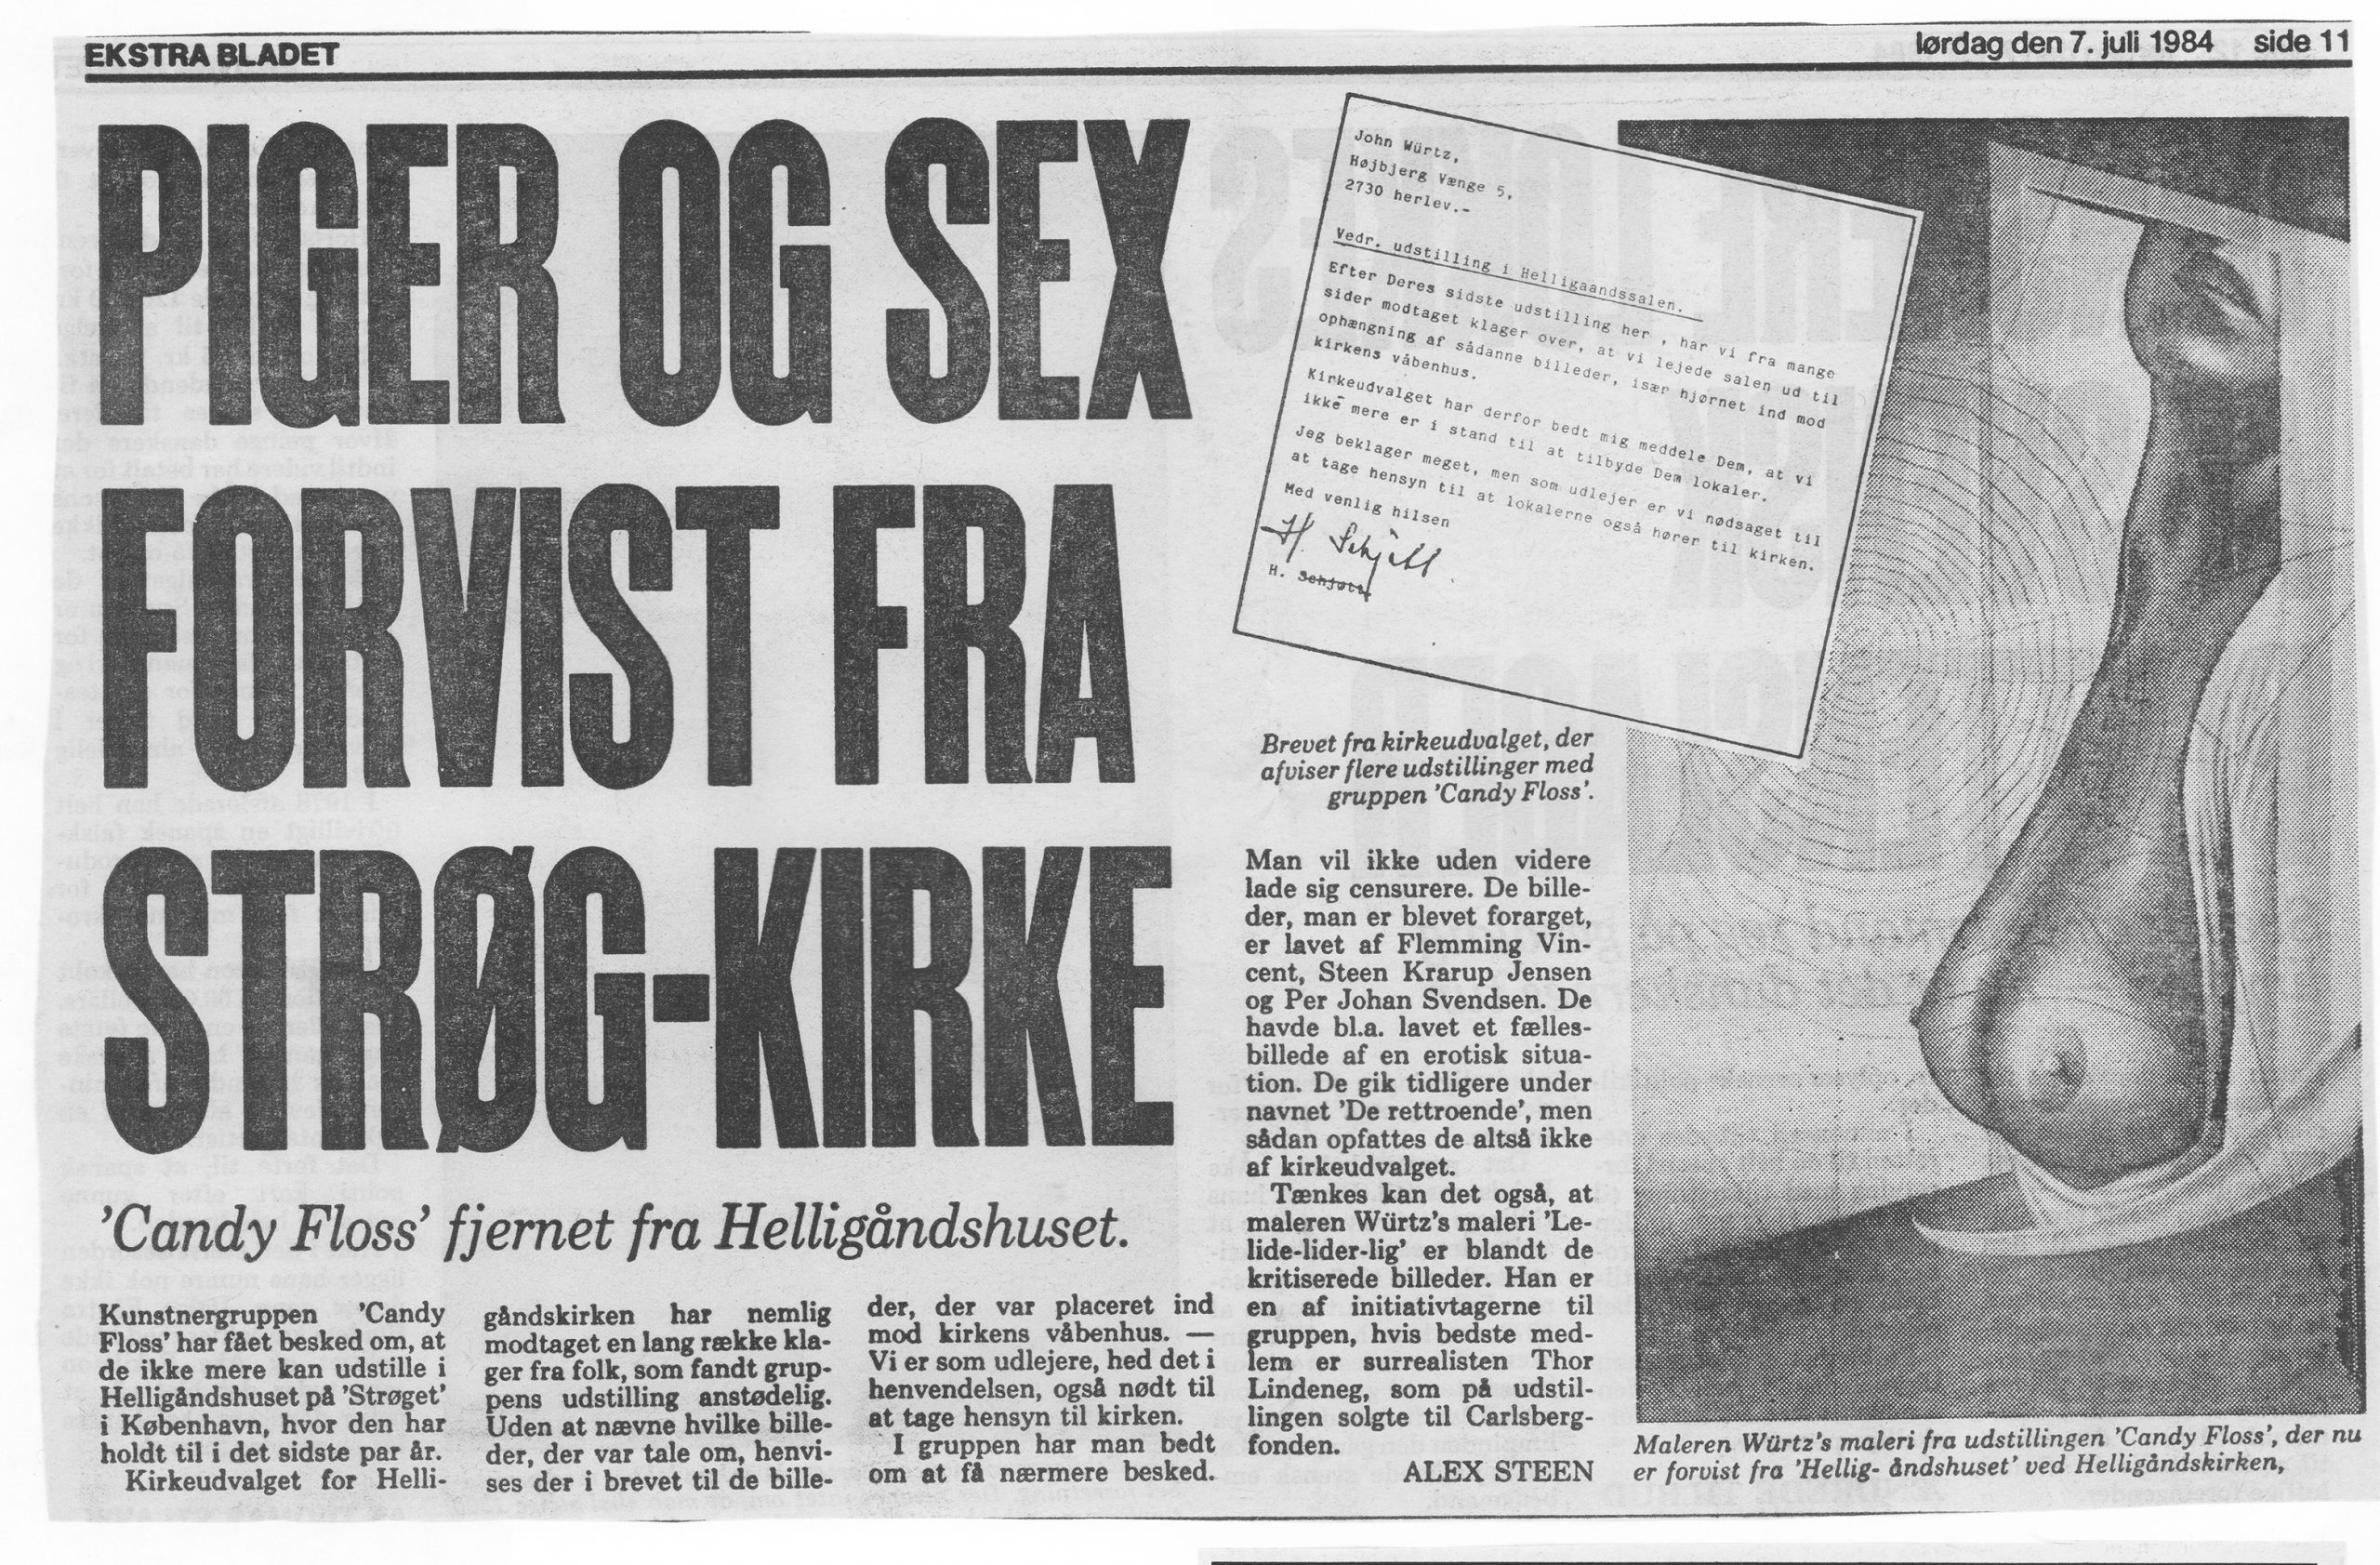 Piger og sex forvist fra strøg-kirke. Omtale(Candy Floss, Helligåndskirken, København). Ekstrabladet.